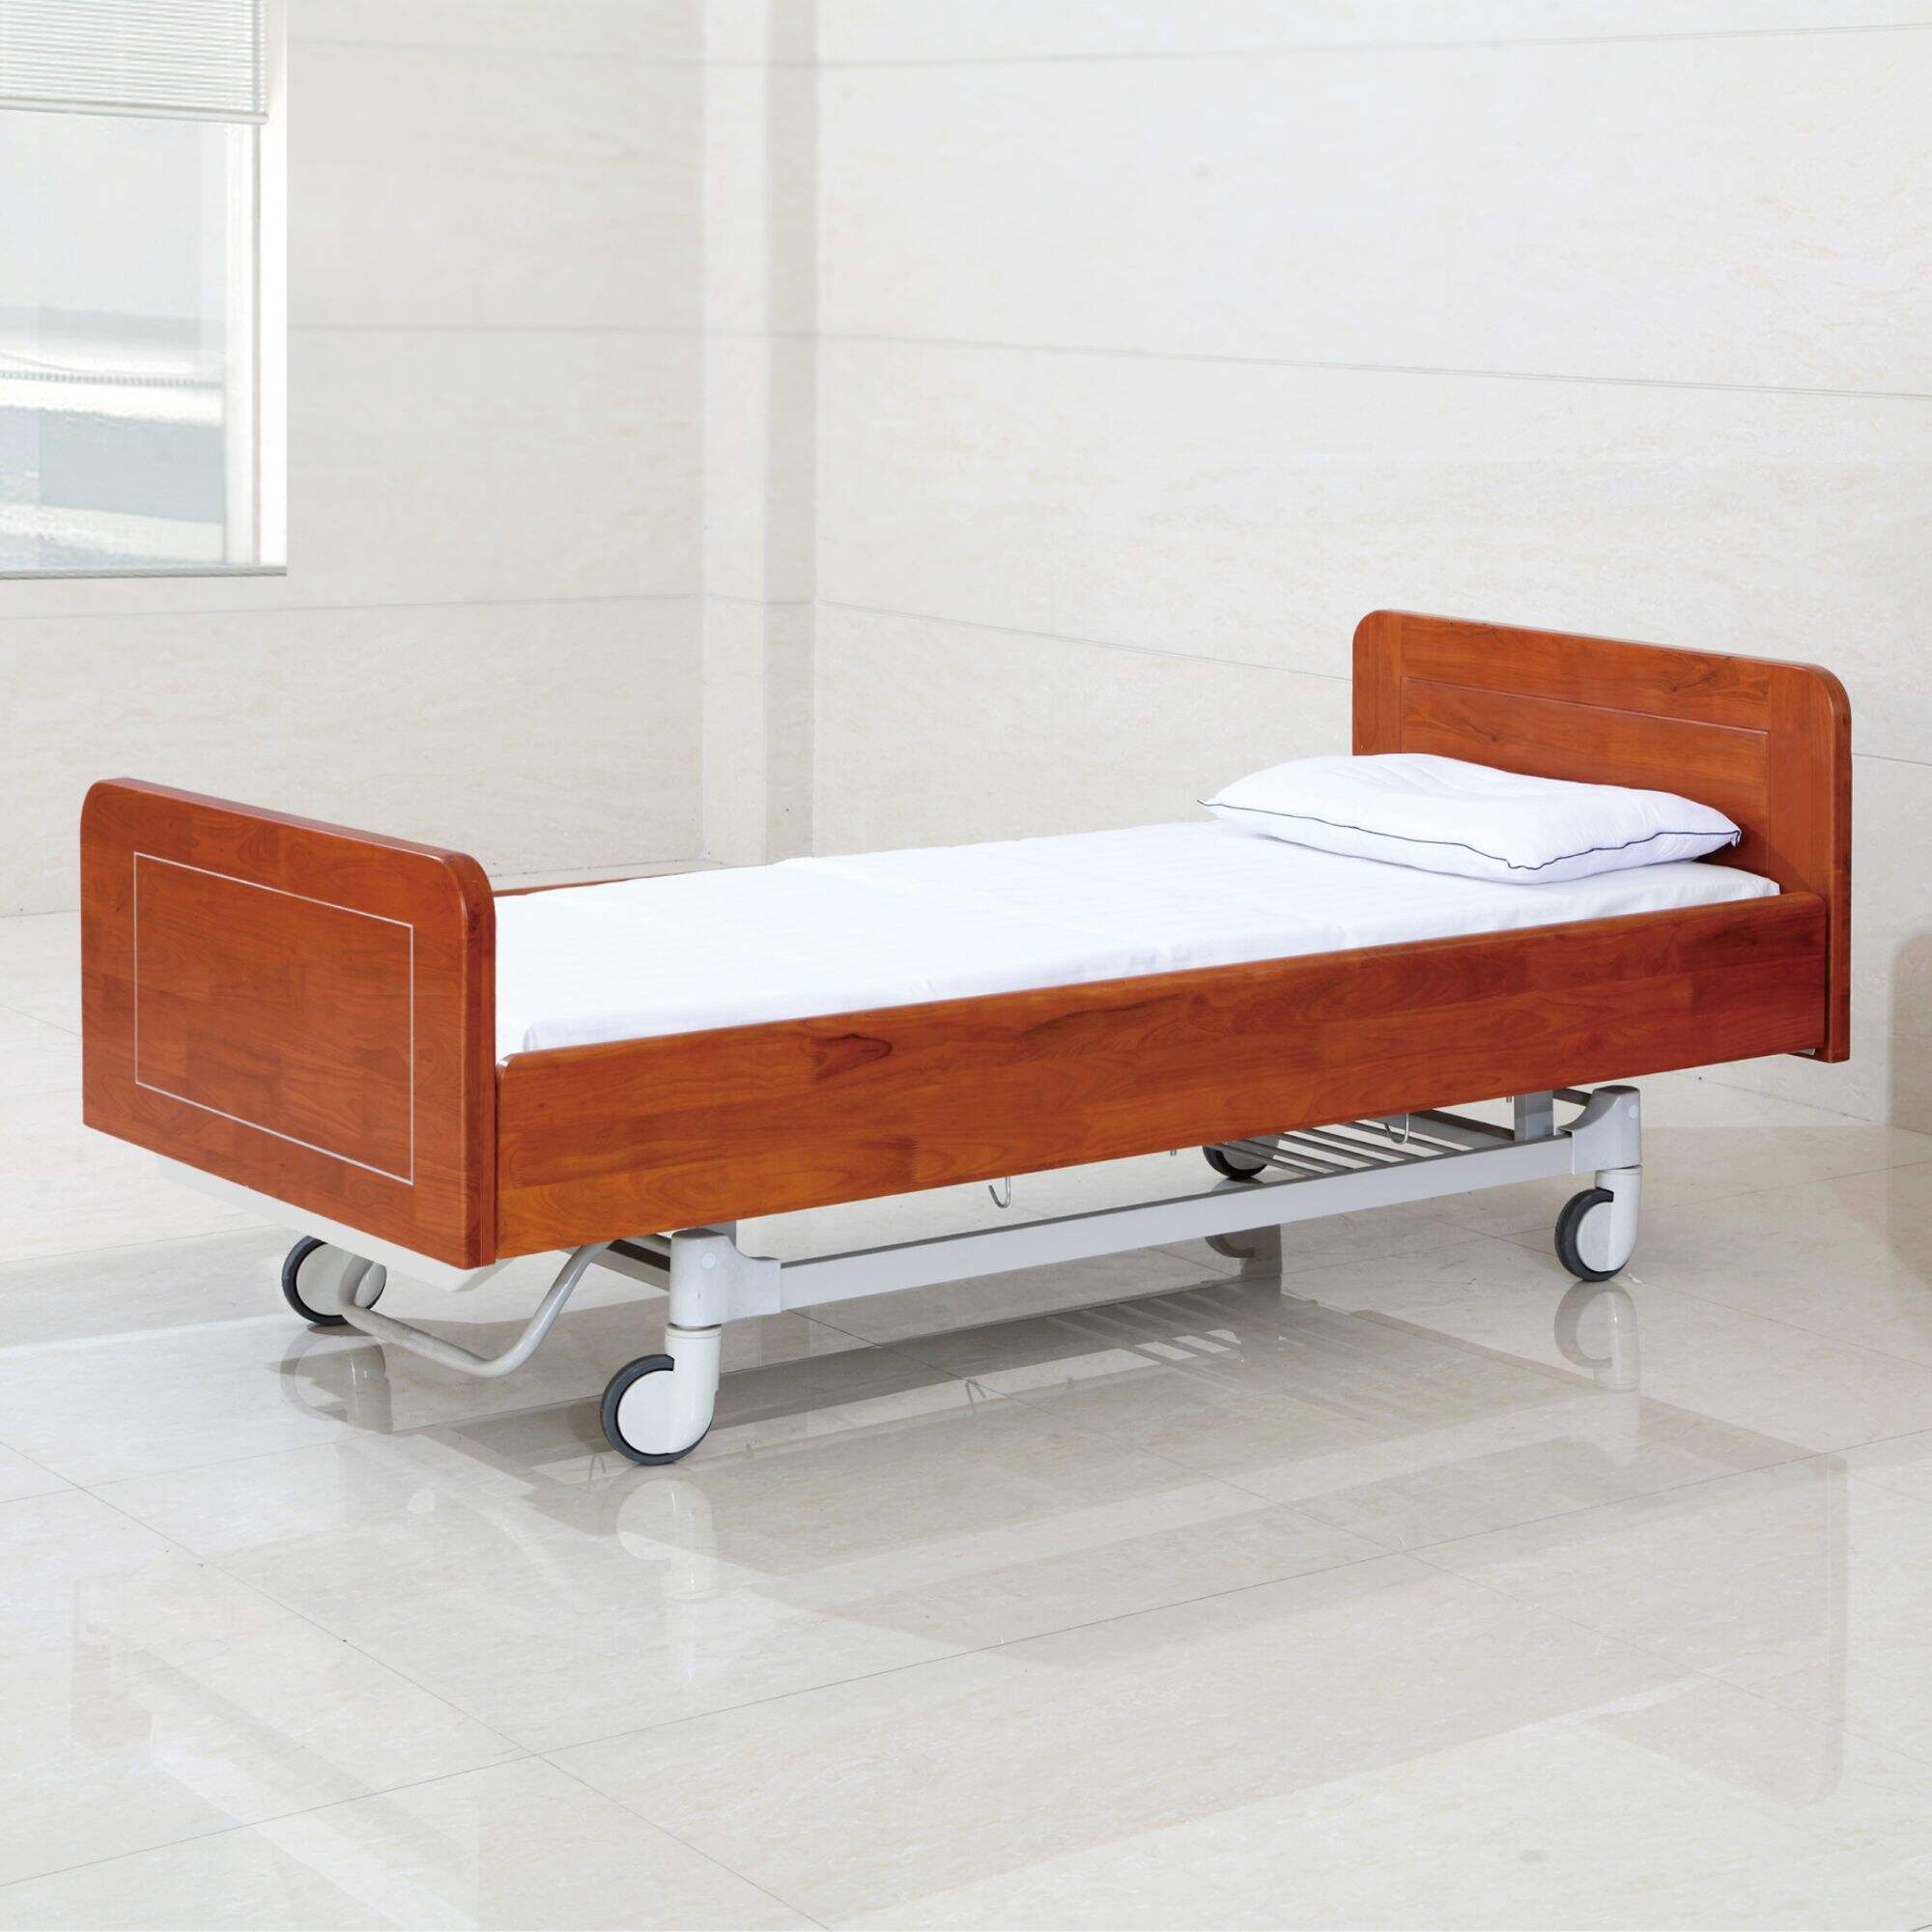 YFC201K(III) Two Function Manual Nursing Bed